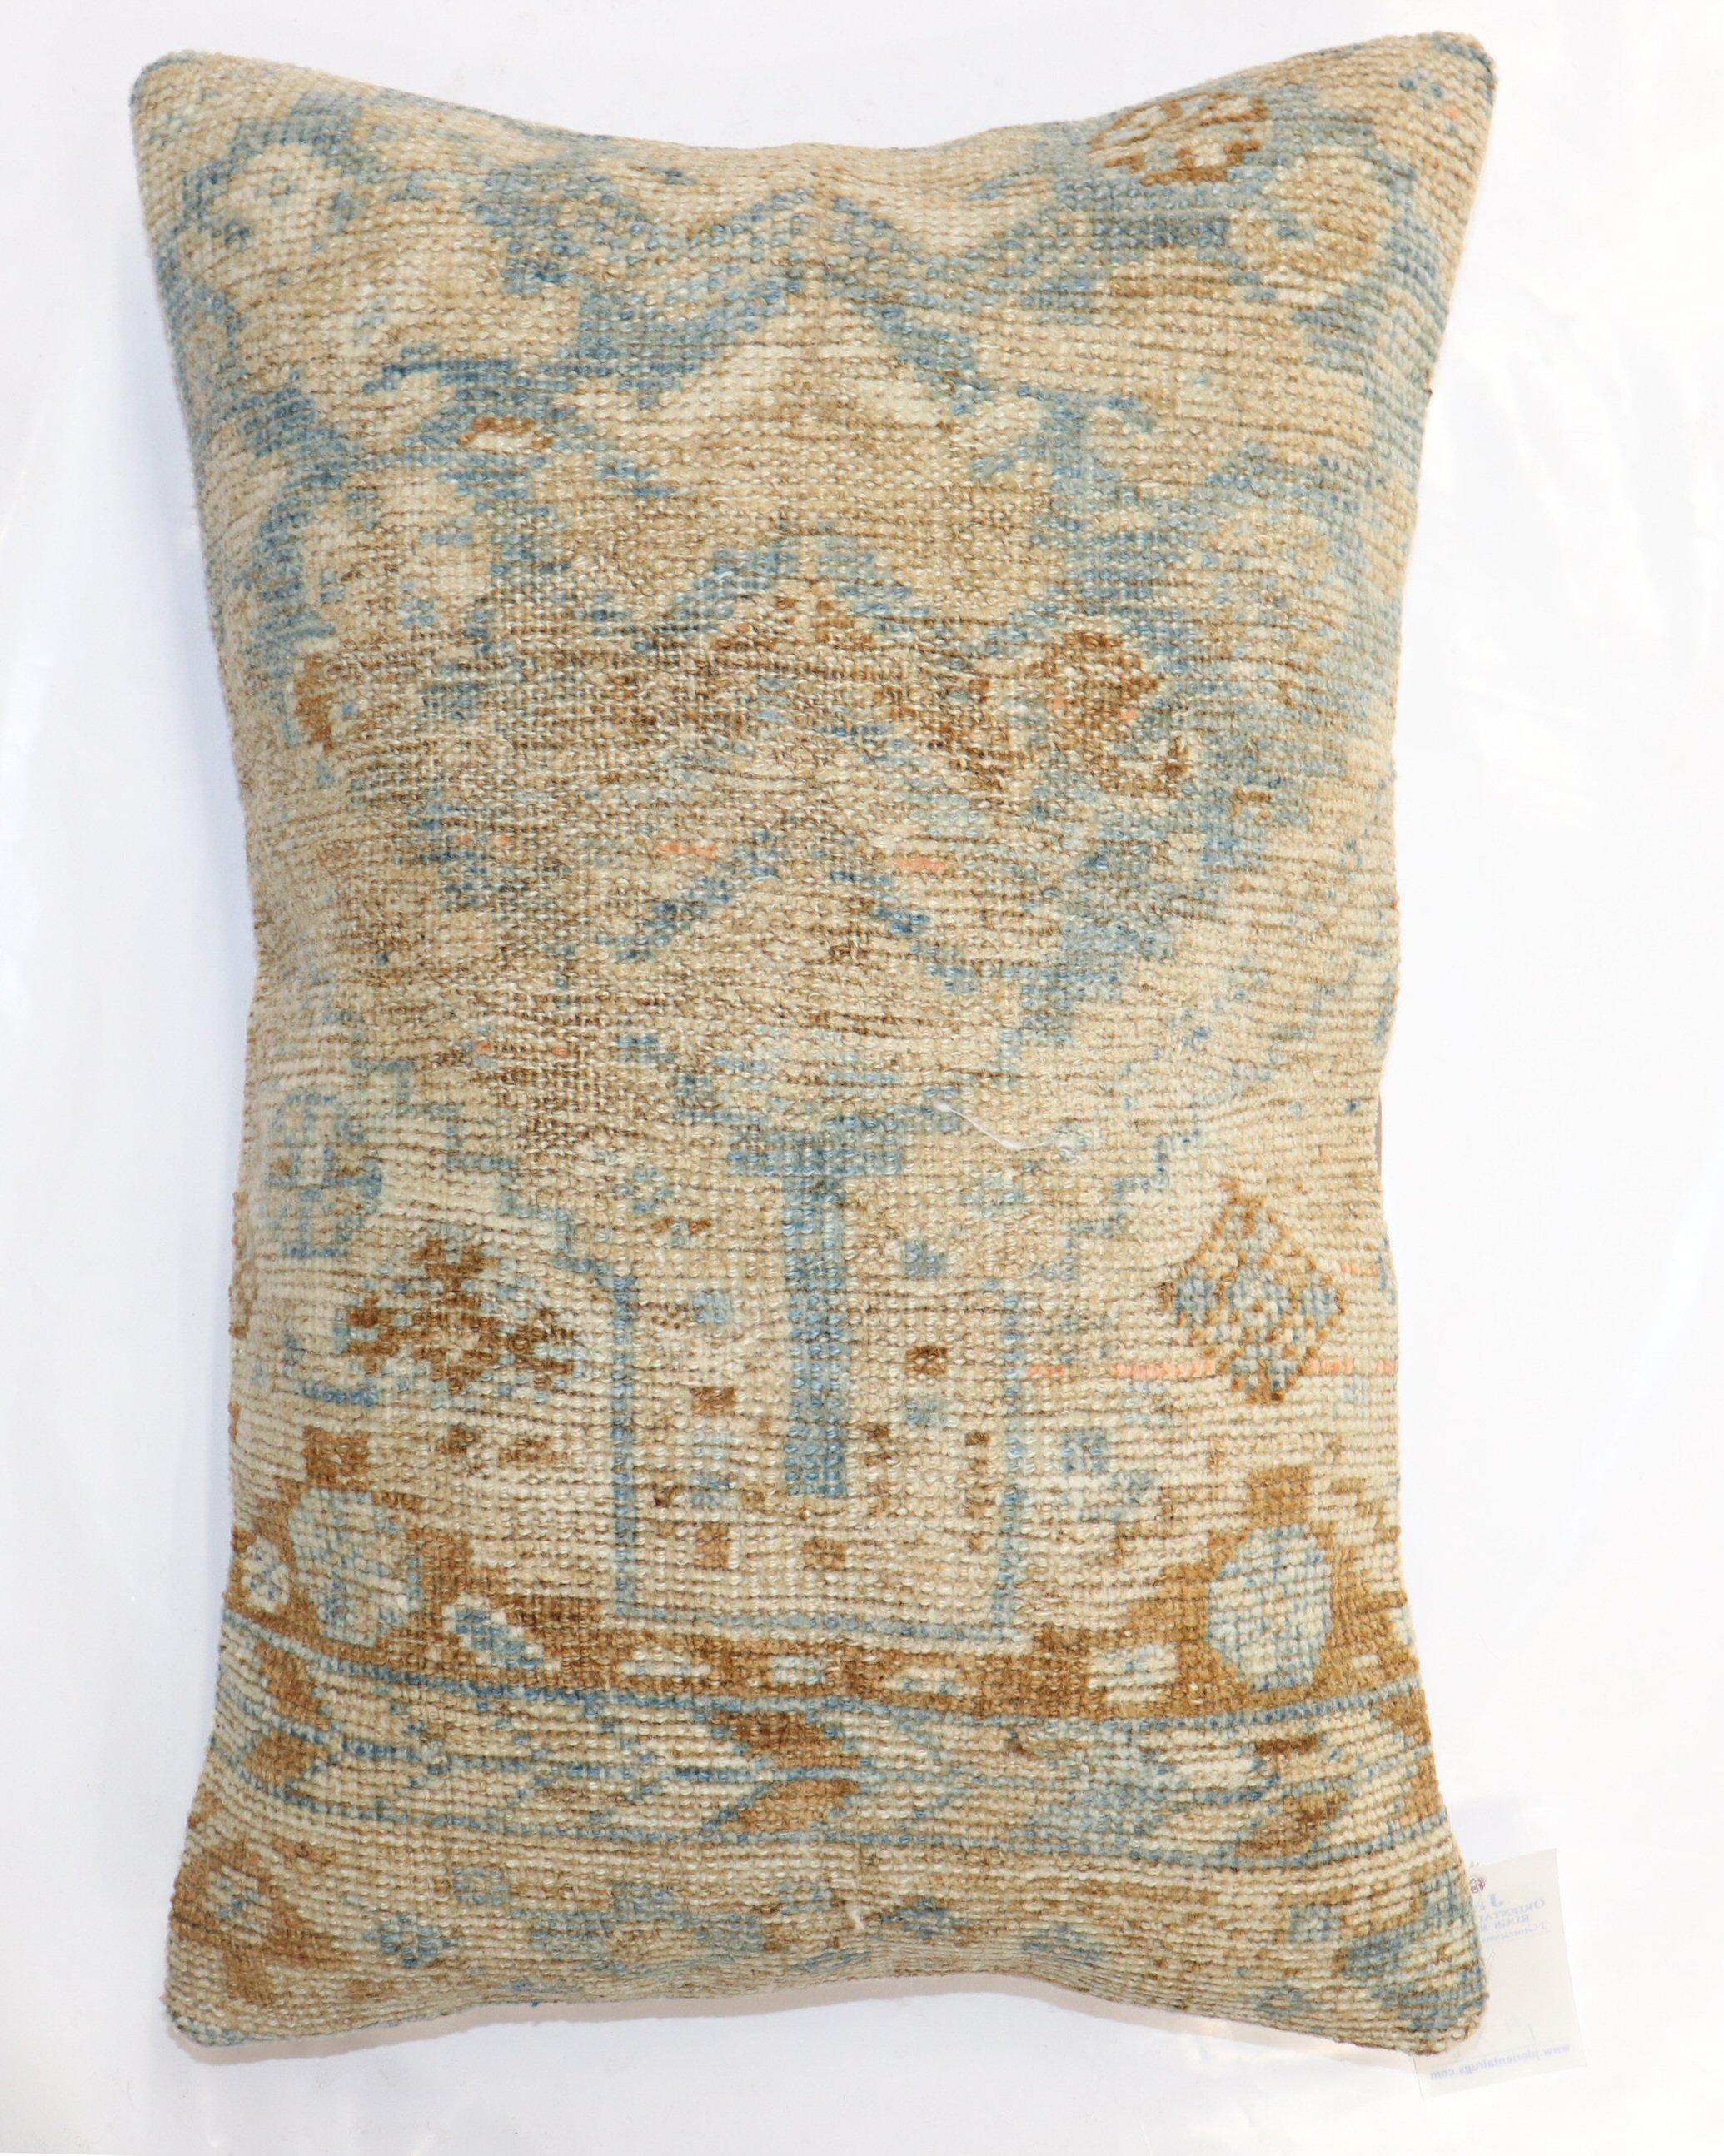 Kissen aus einem antiken persischen Bakshaish-Teppich aus dem späten 19. Jahrhundert mit Baumwollrücken. Verschluss mit Reißverschluss.

Maße: 16'' x 23''.